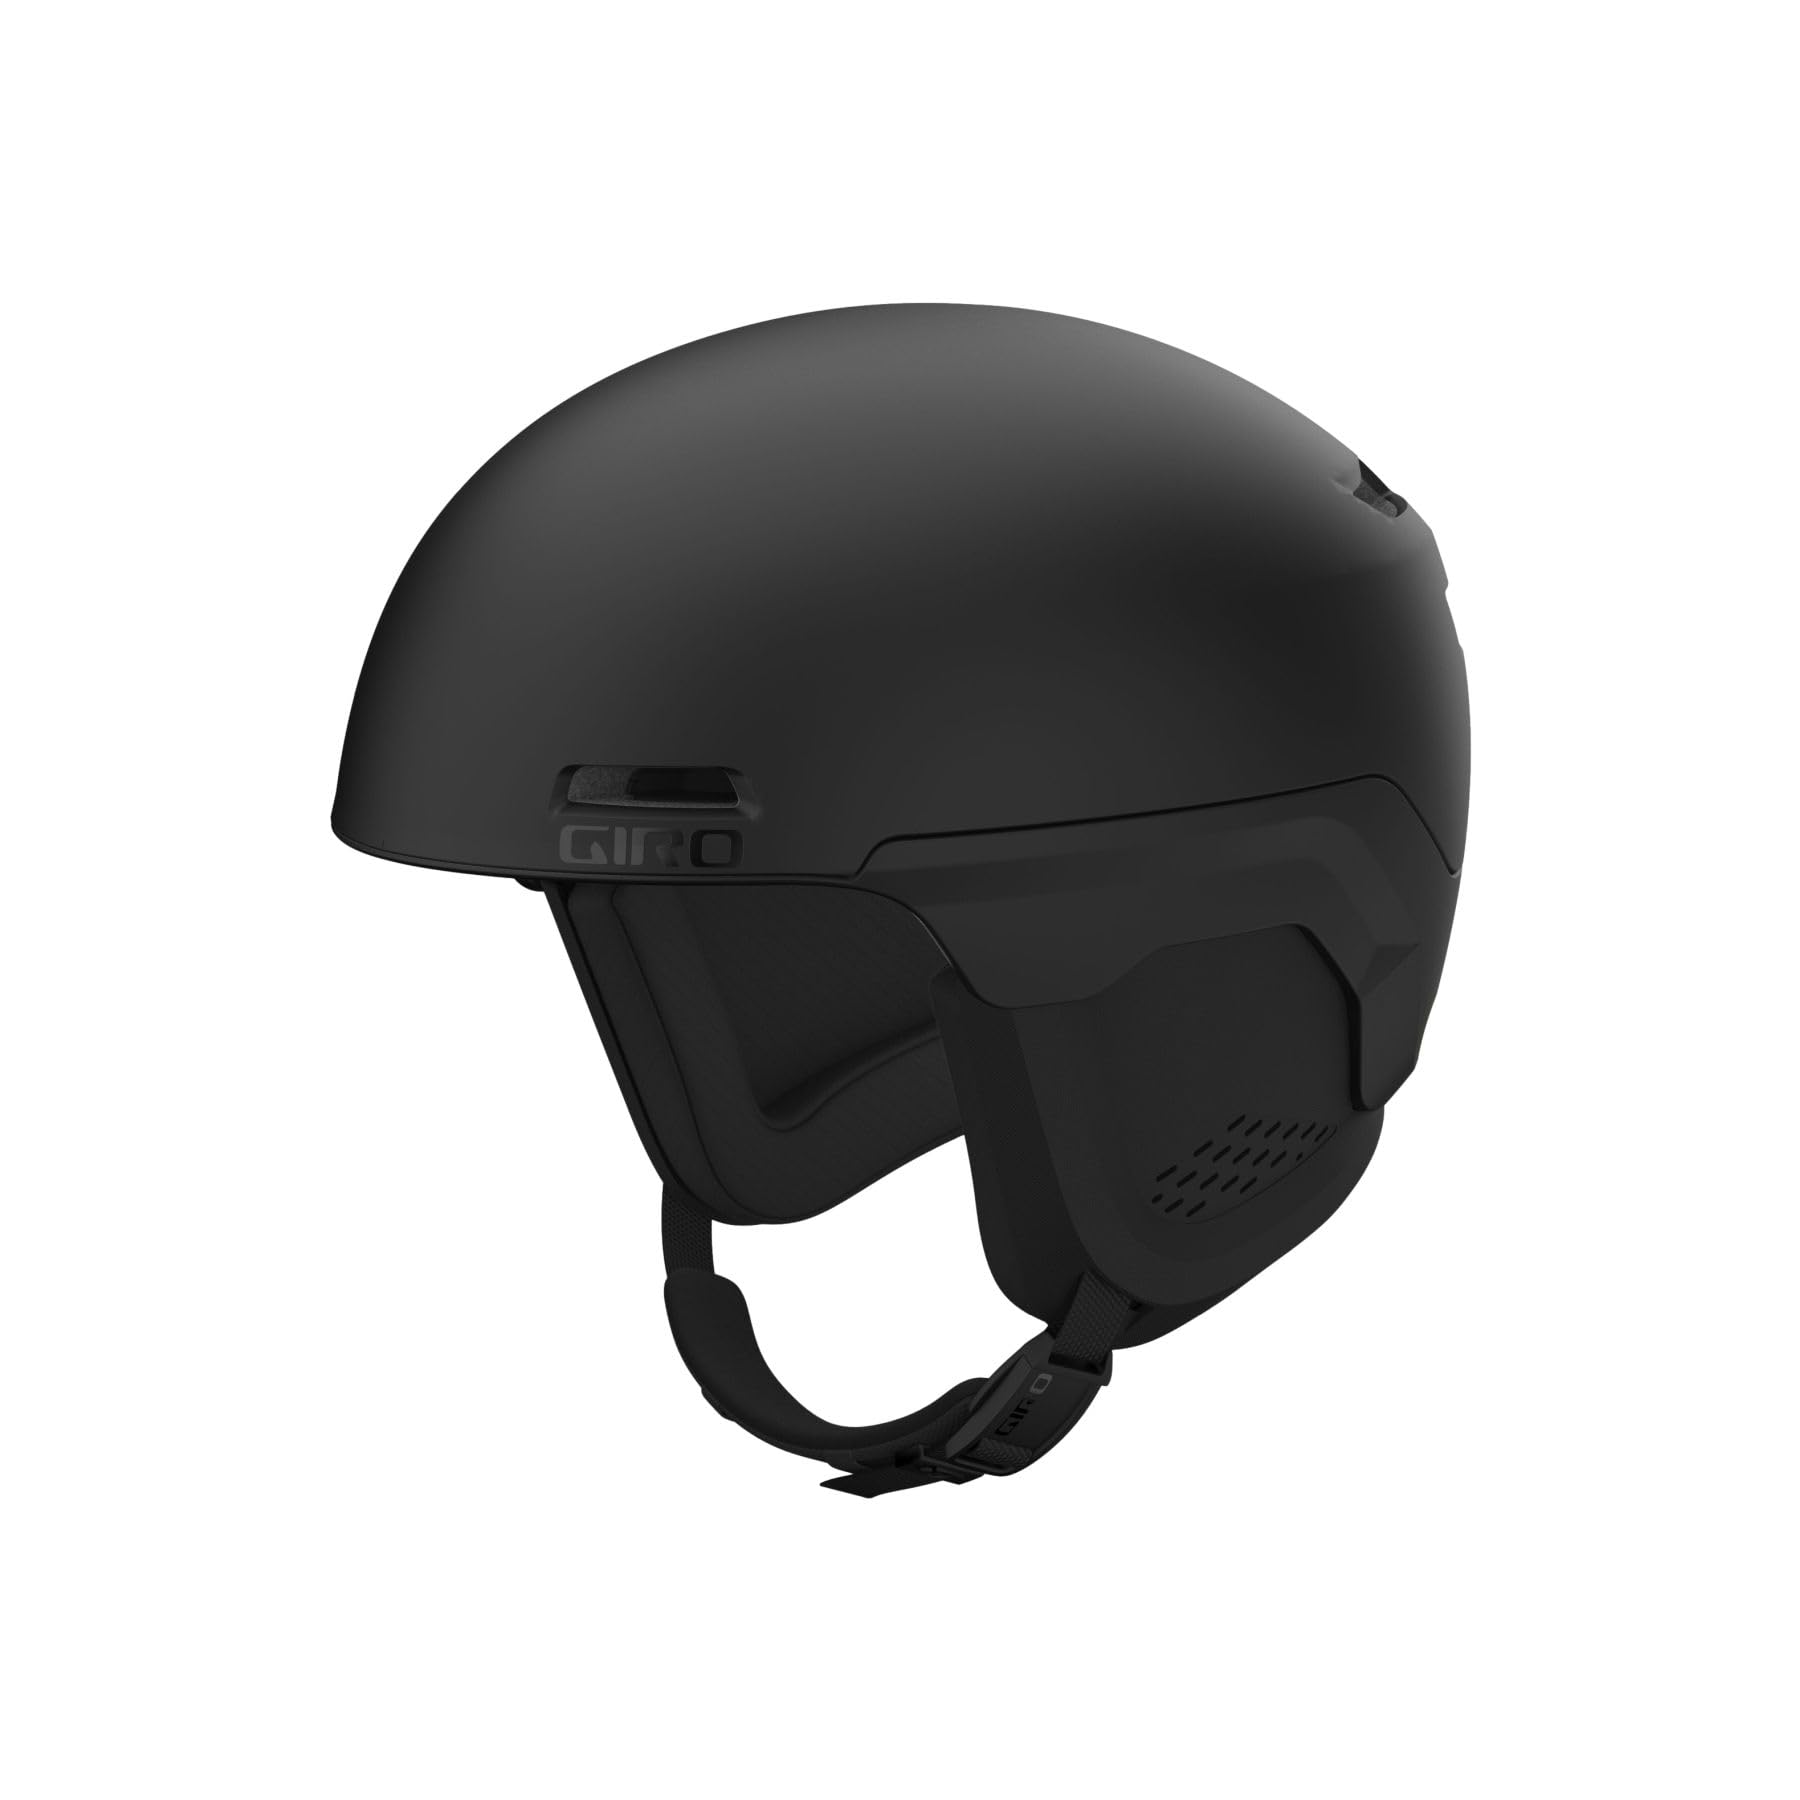 Giro Owen Spherical Ski Helmet - Snowboarding Helmet for Men Women and Youth - Matte Black - S 52-55.5cm並行輸入品